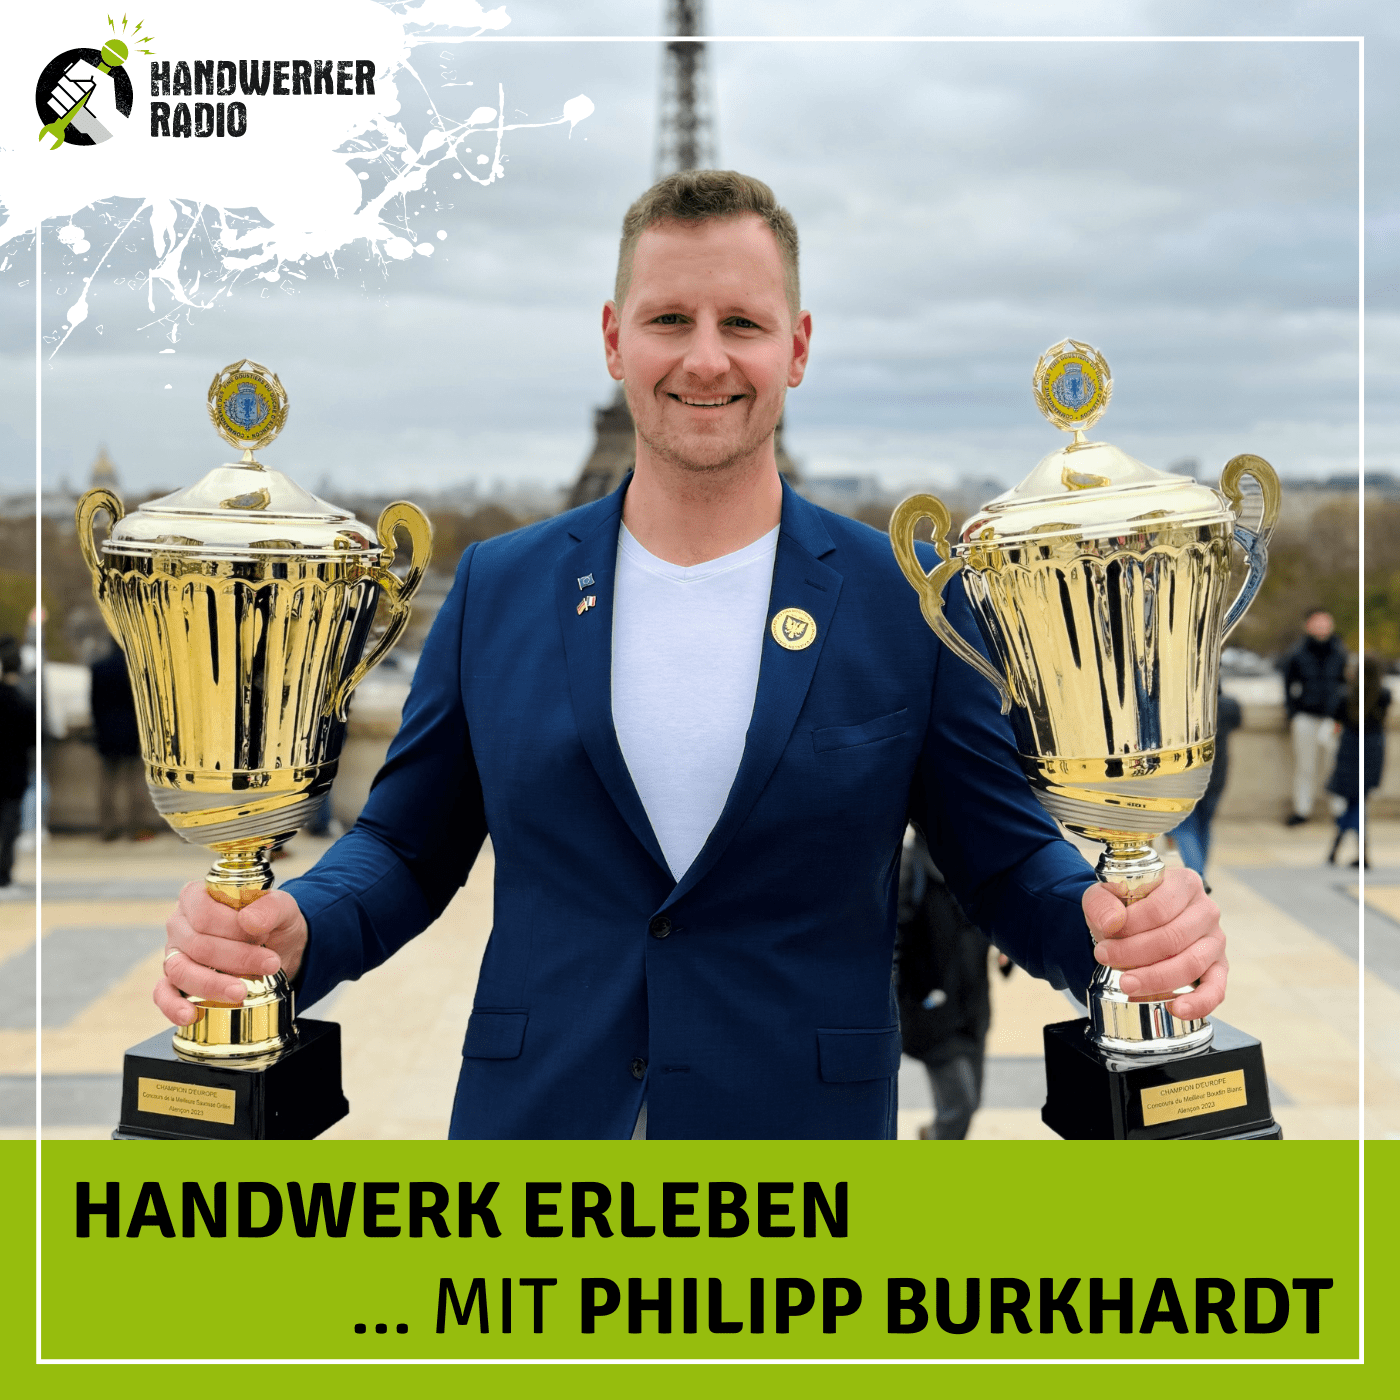 #71 Philipp Burkhardt, wie muss die perfekte Weißwurst schmecken?